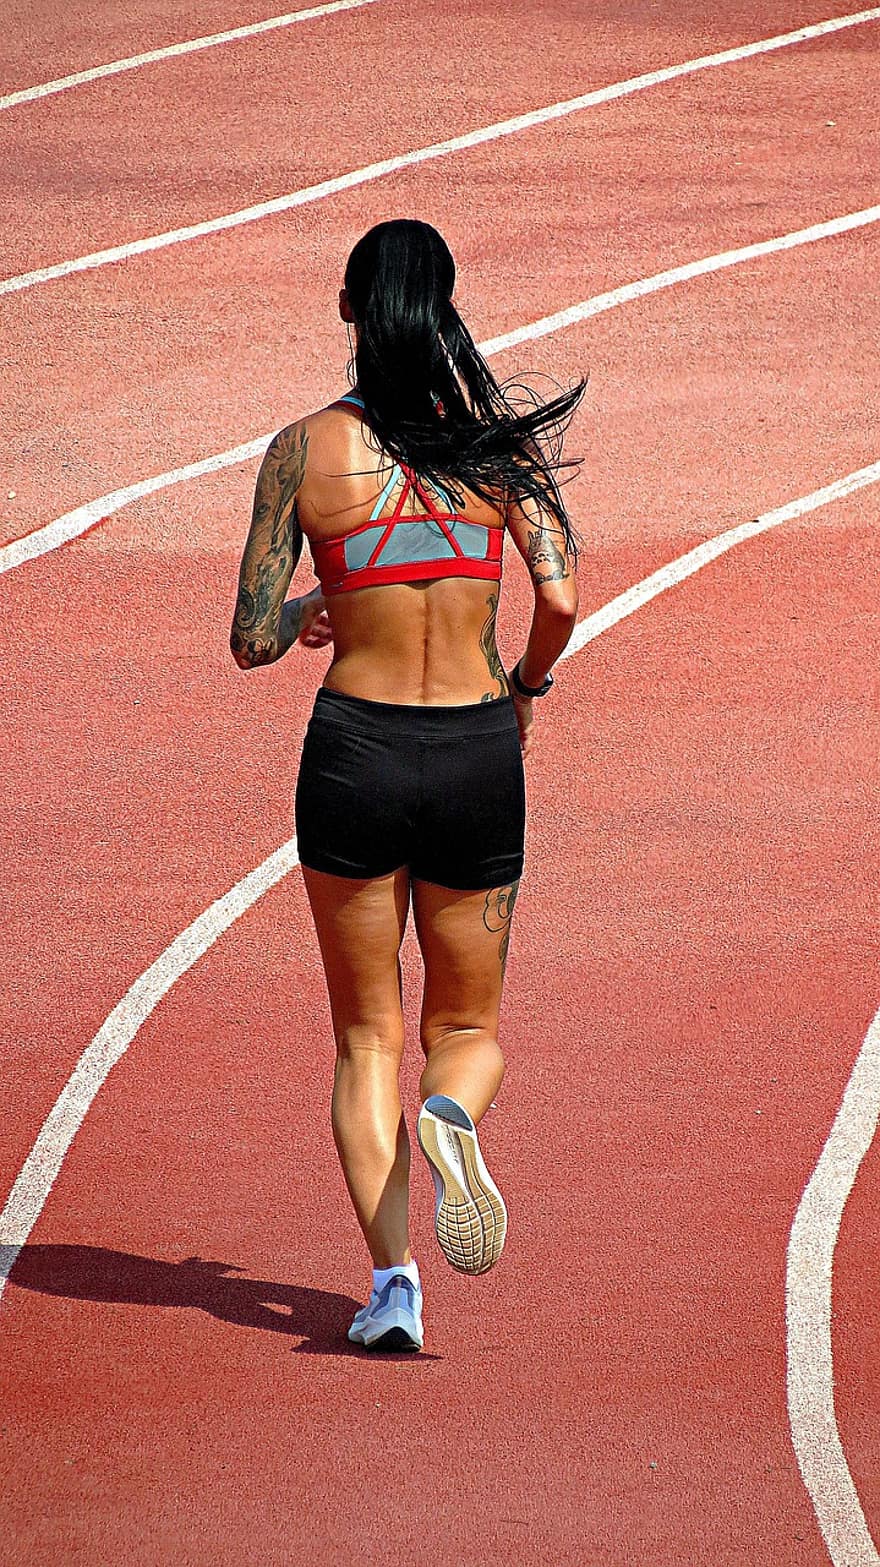 springa, kondition, löparbana, kvinna, sporter, wellness, övning, träna, löpning, joggning, sport